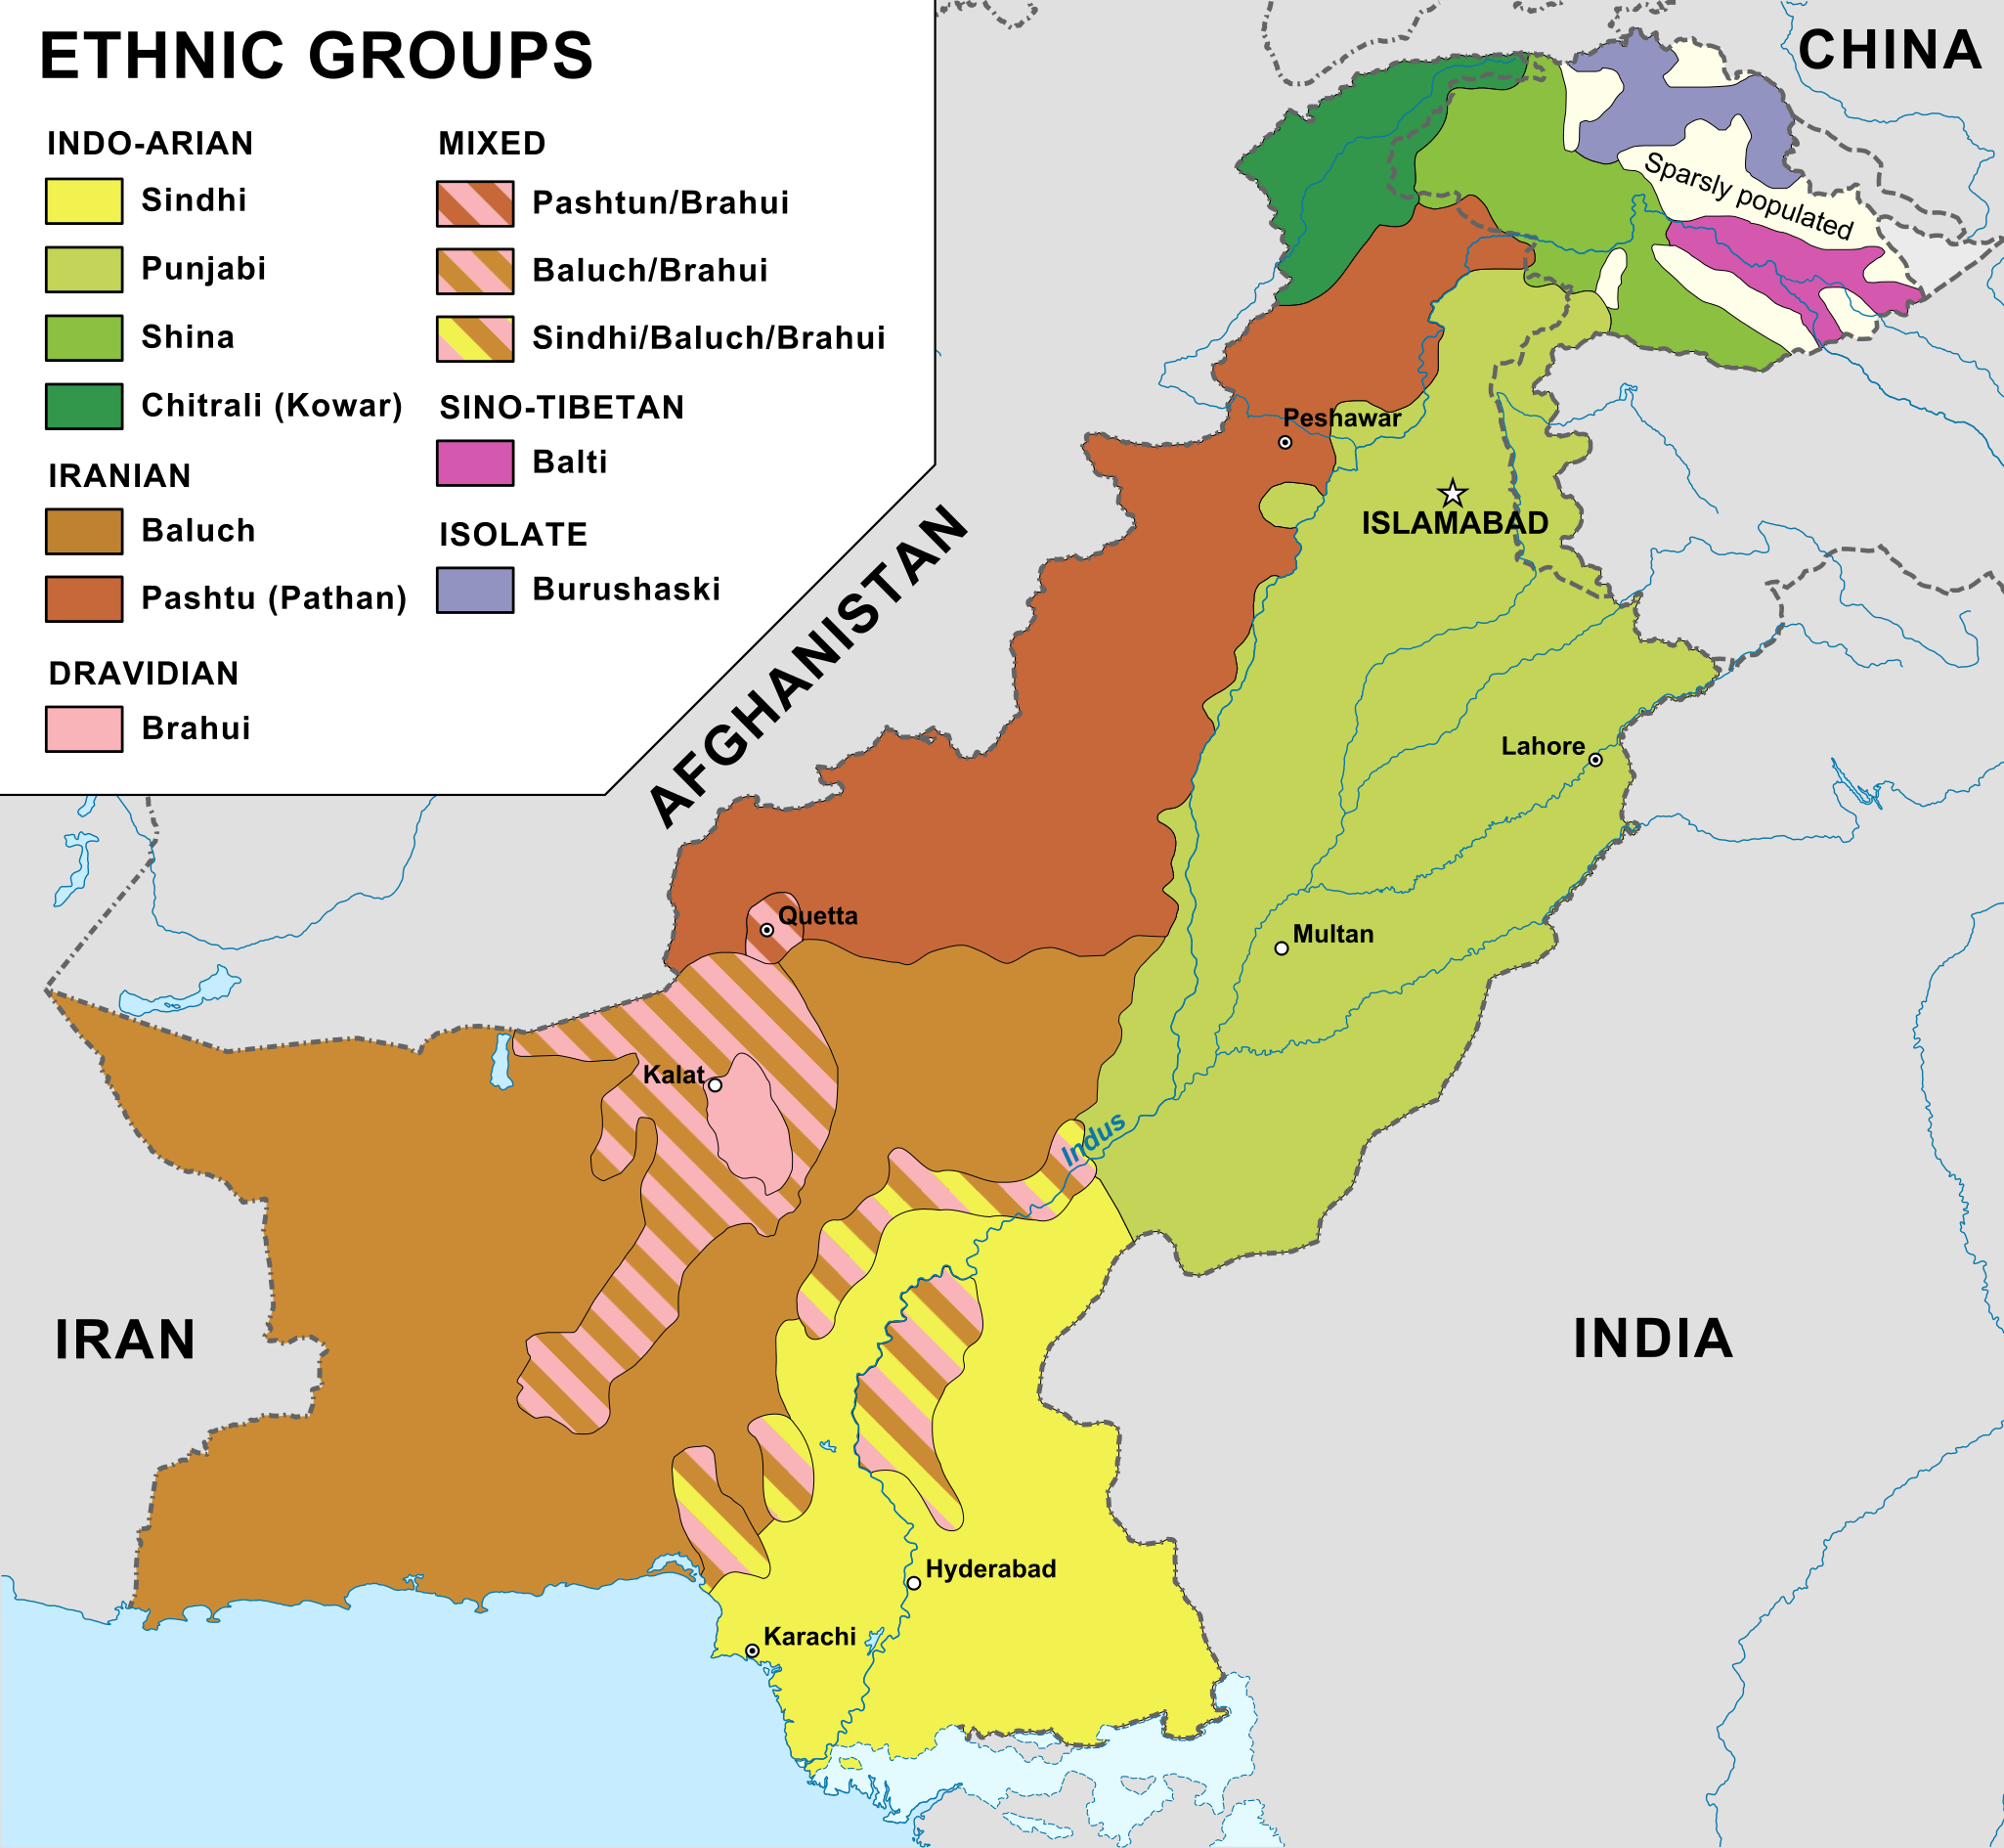 巴基斯坦行政区划如下:(括号里面为省会或行政中心,人口,面积)俾路支